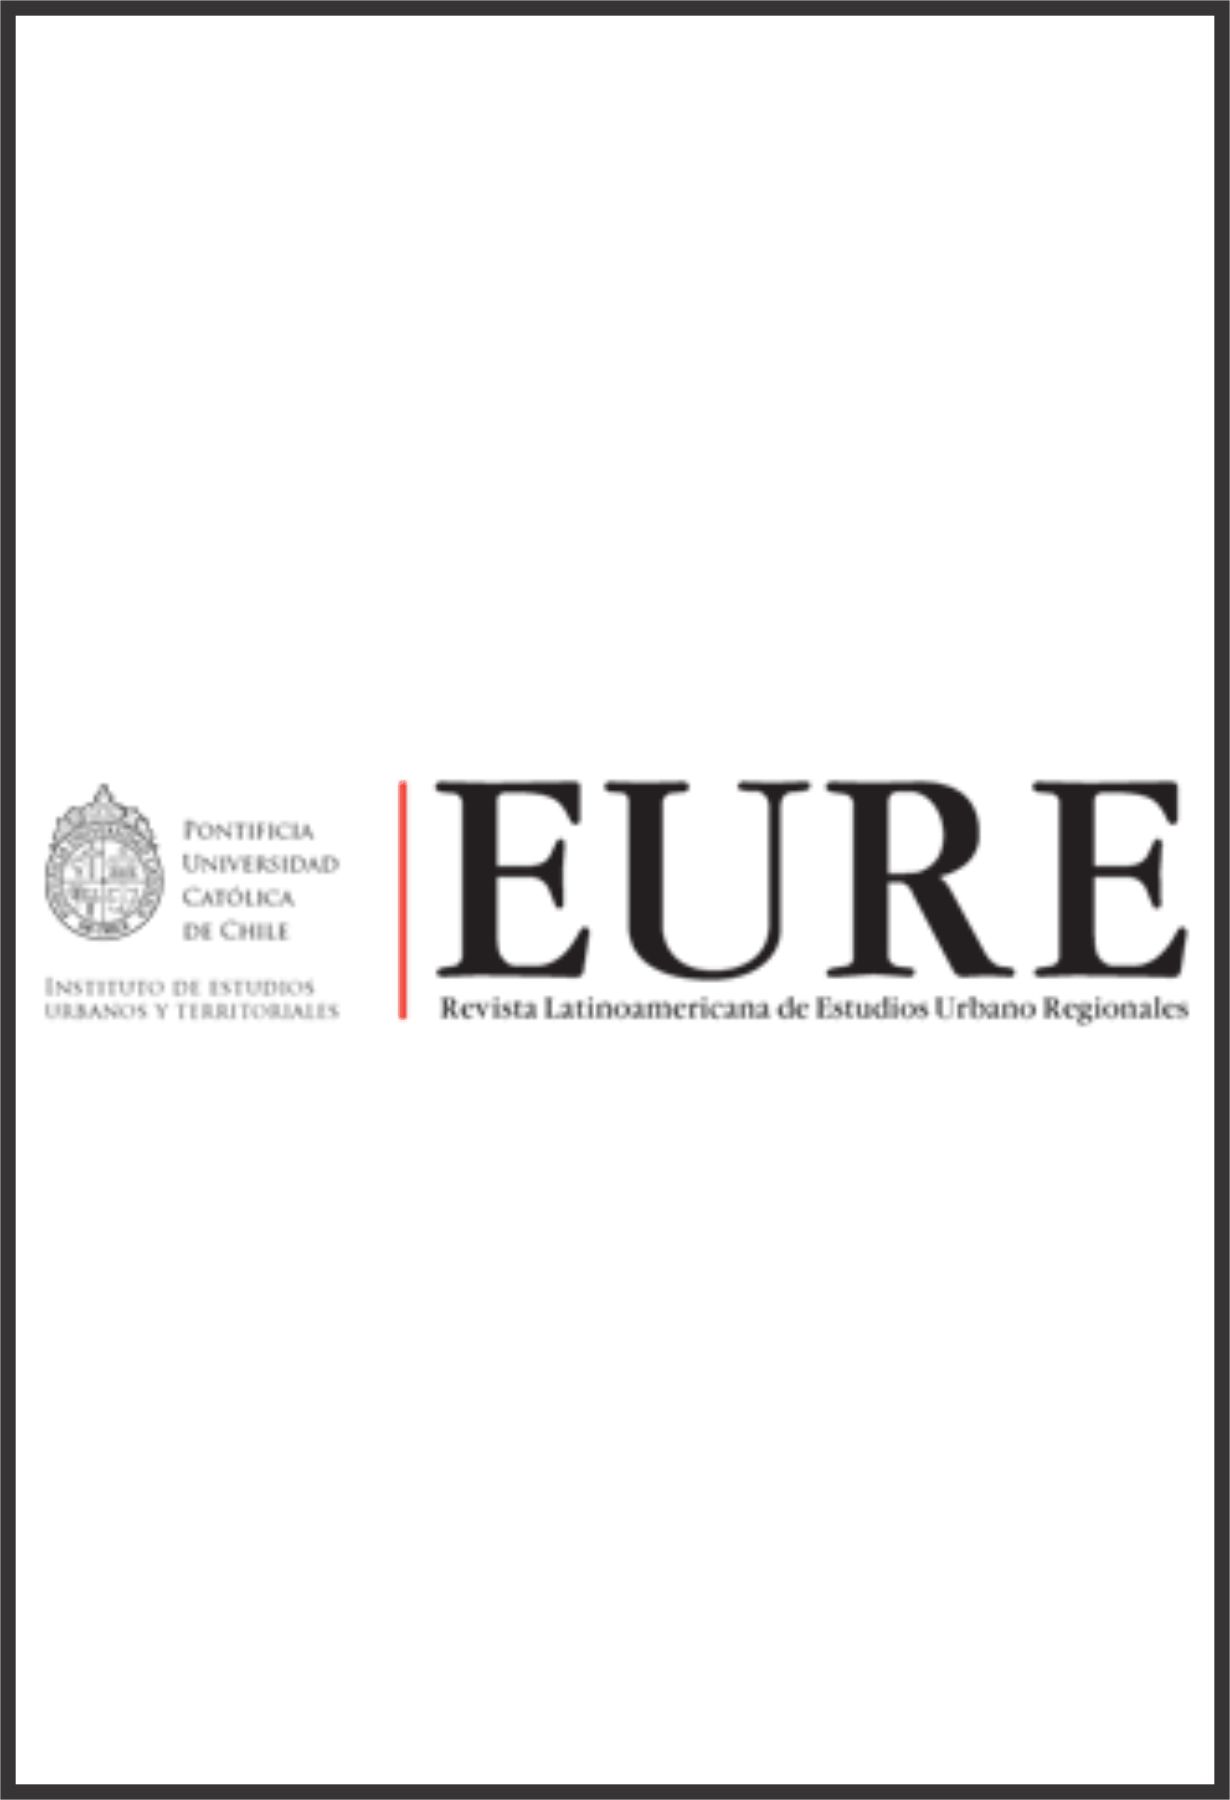 Capa: Revista Latinoamericana de Estudios Urbano Regionales